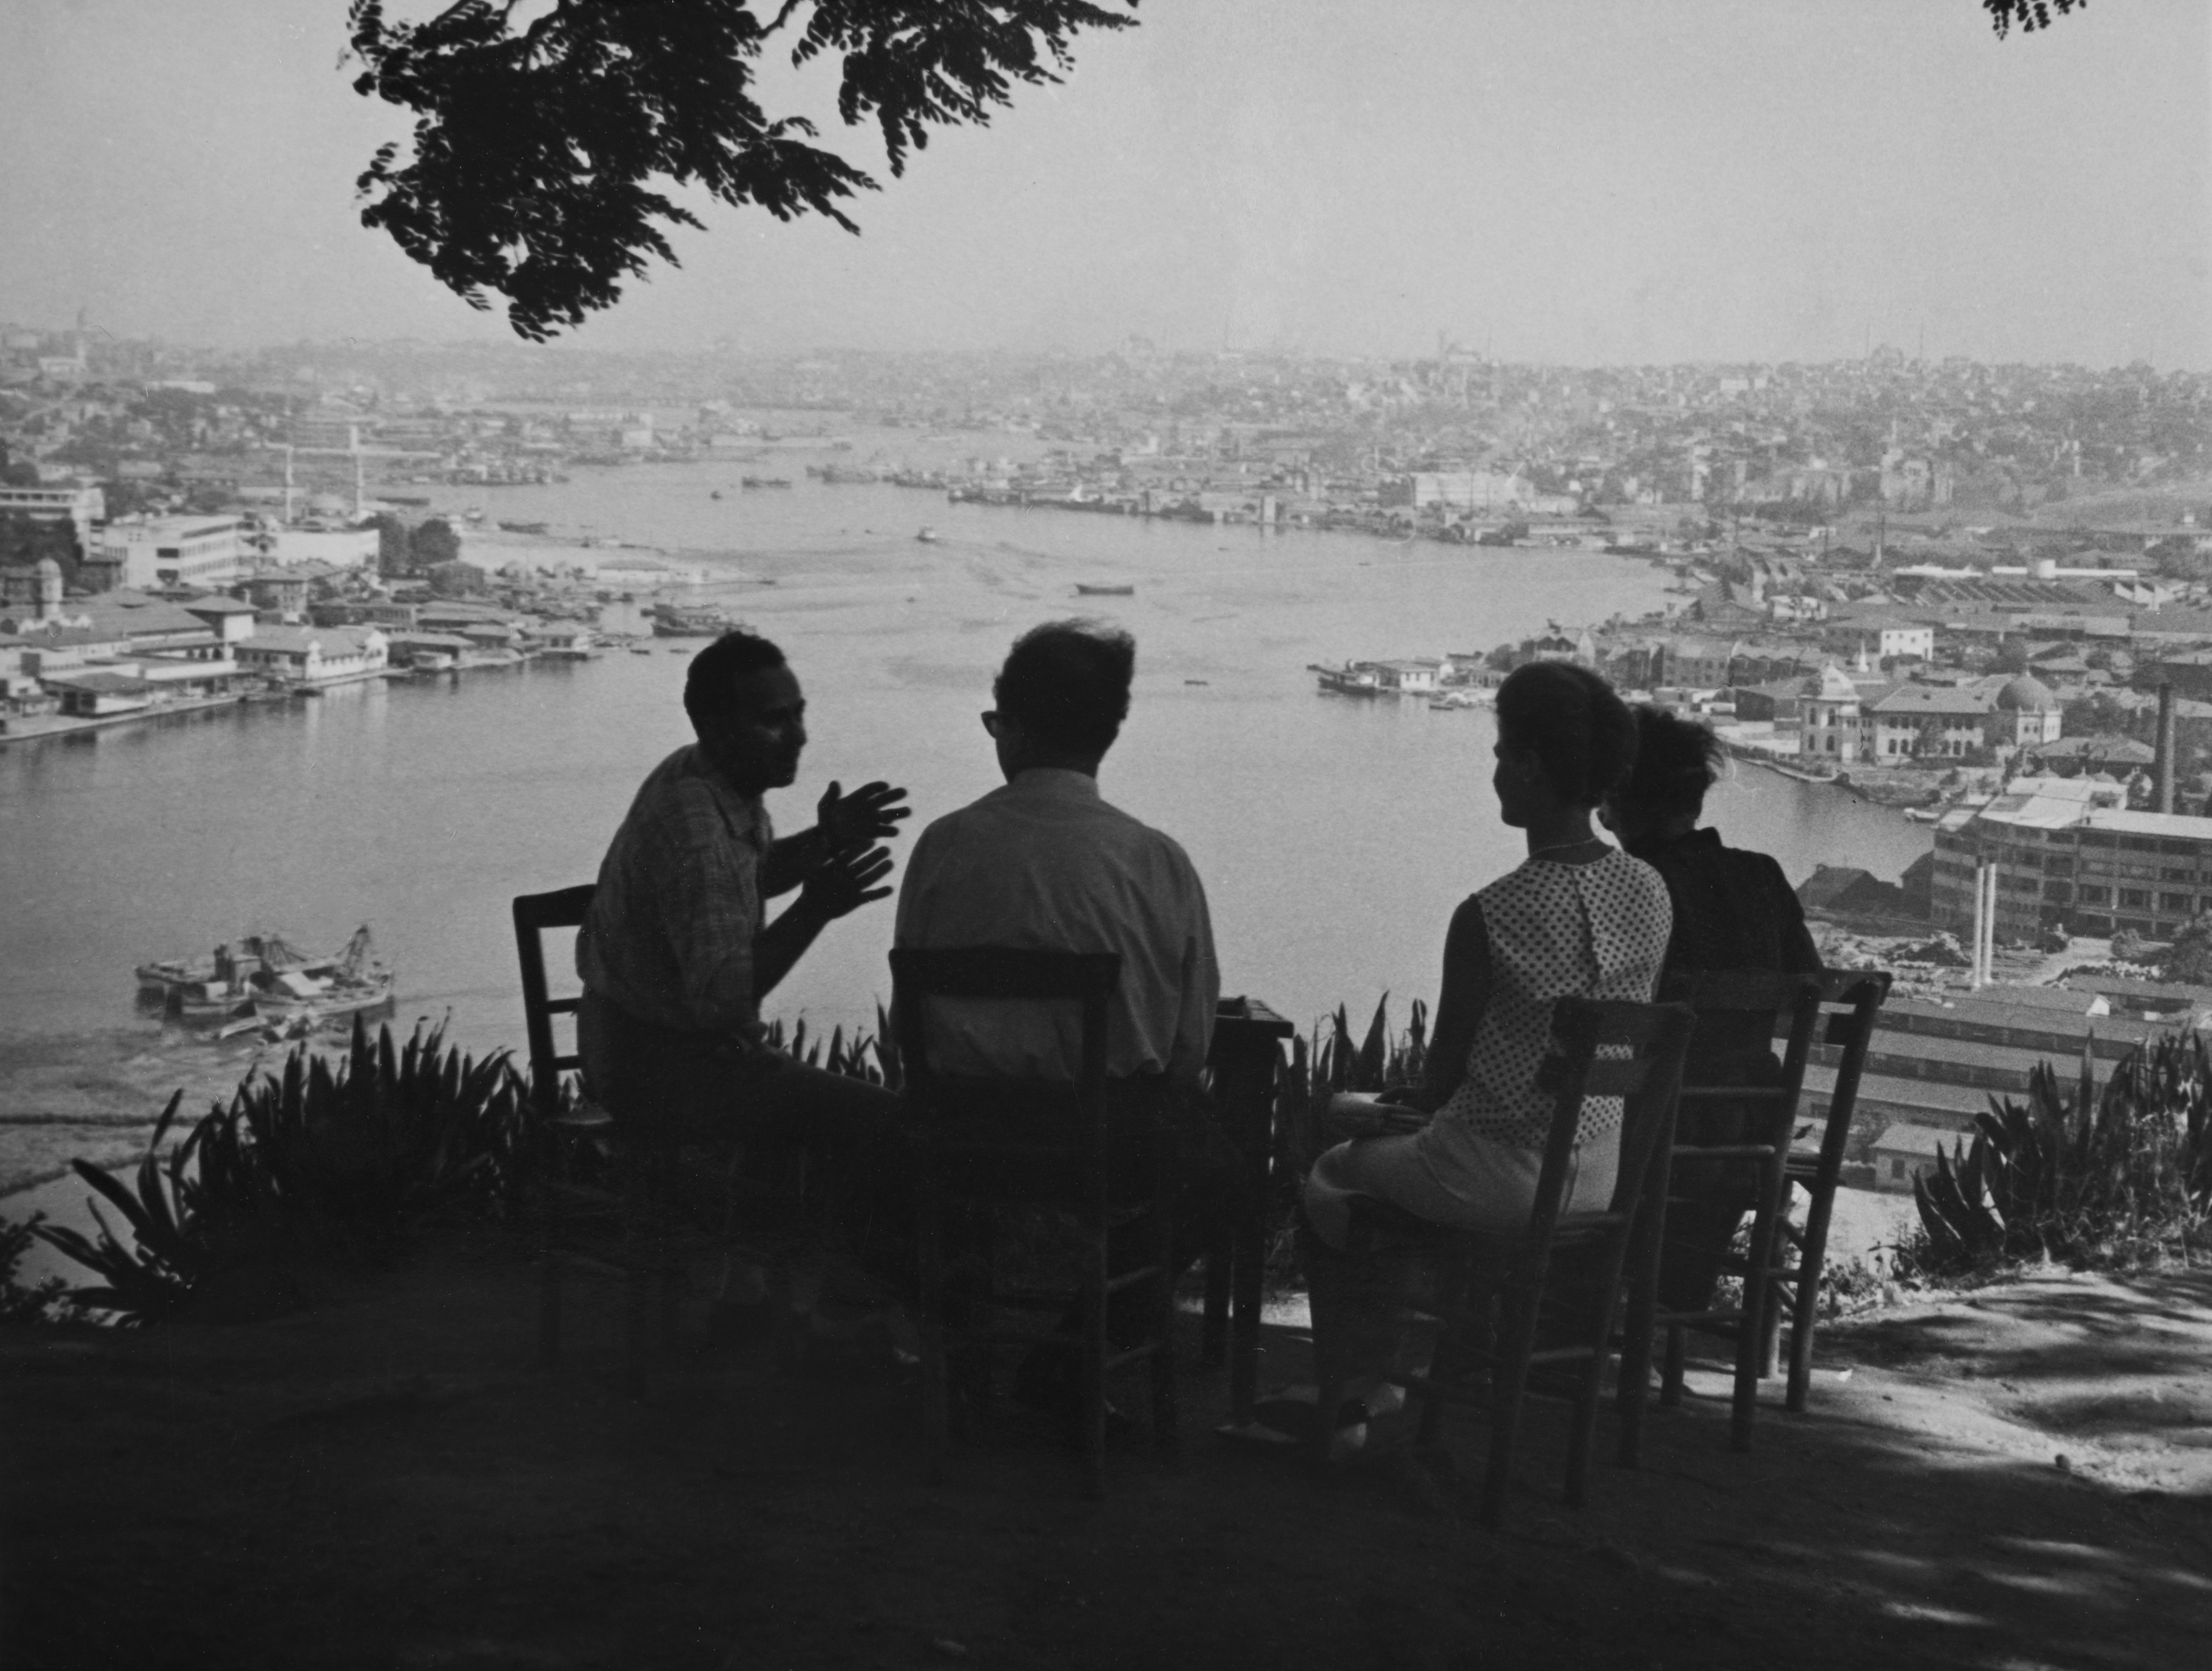 Helsinkiläisten matkaseurue istuu Pierre Lotin kahvilan terassilla Istanbulissa. Taustalla avautuu kaunis maisema Bosporinsalmelle.